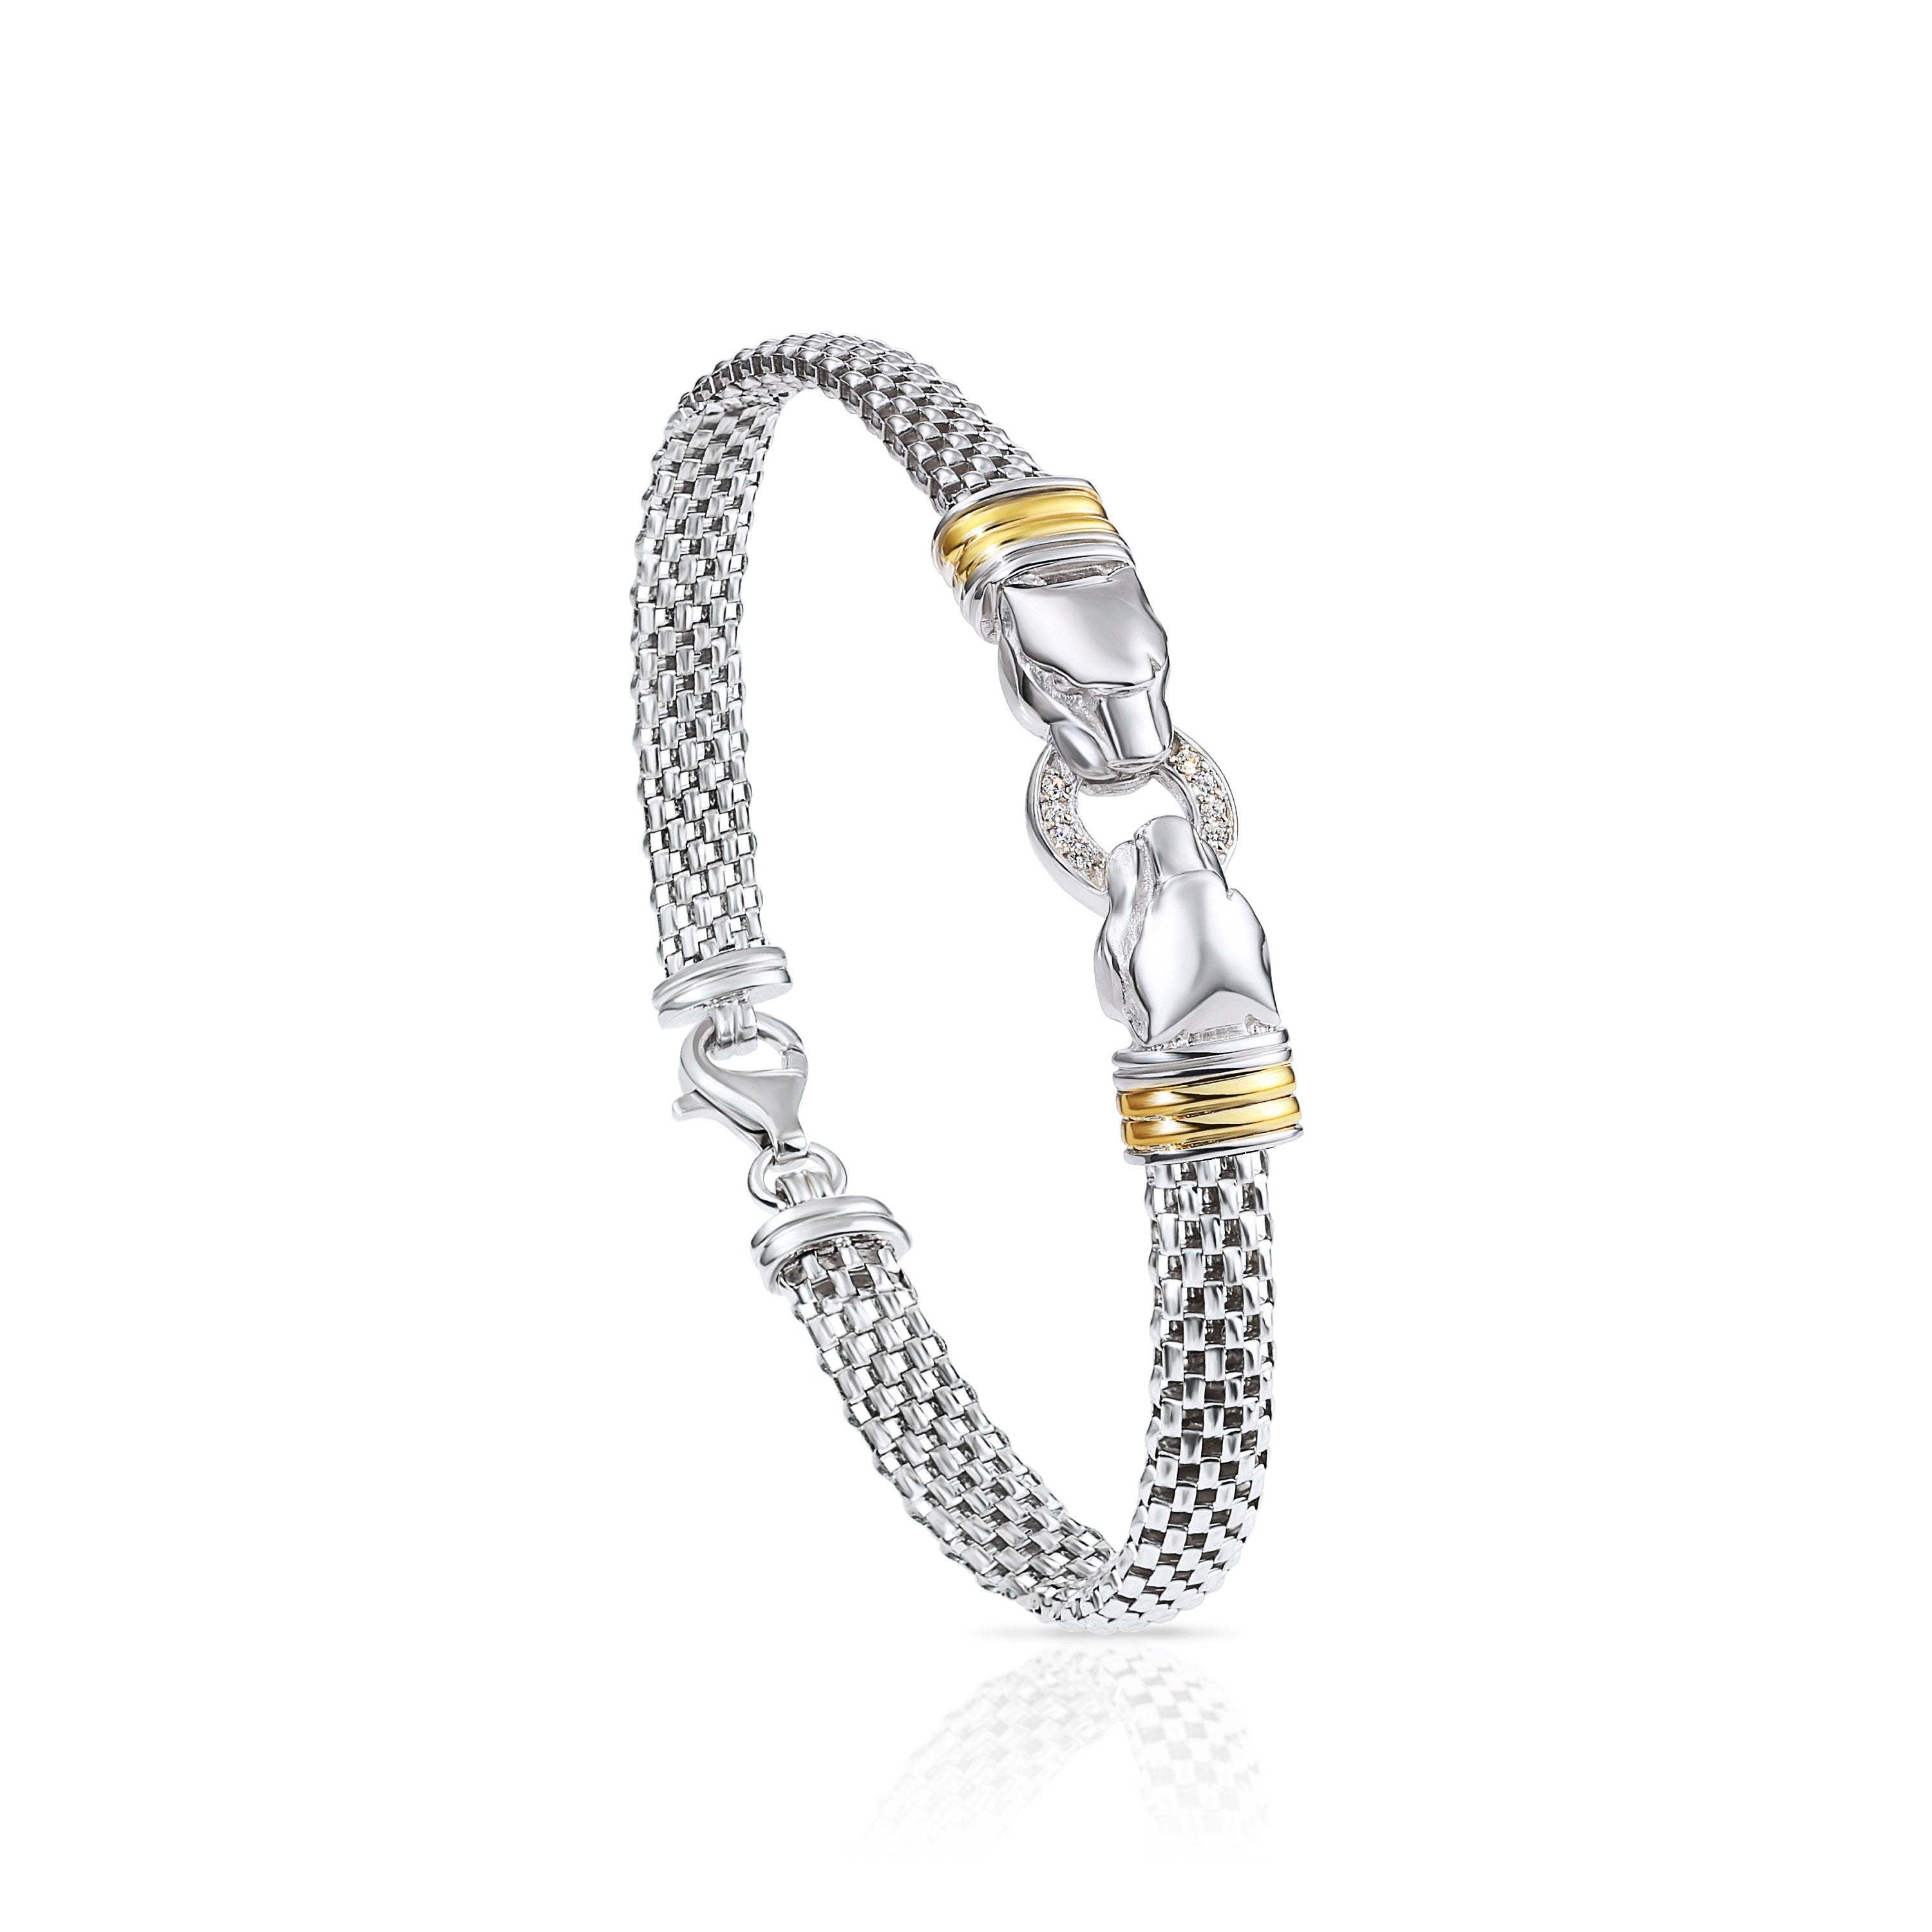 22K Gold Jaguar Bracelet (27.85G) - Queen of Hearts Jewelry